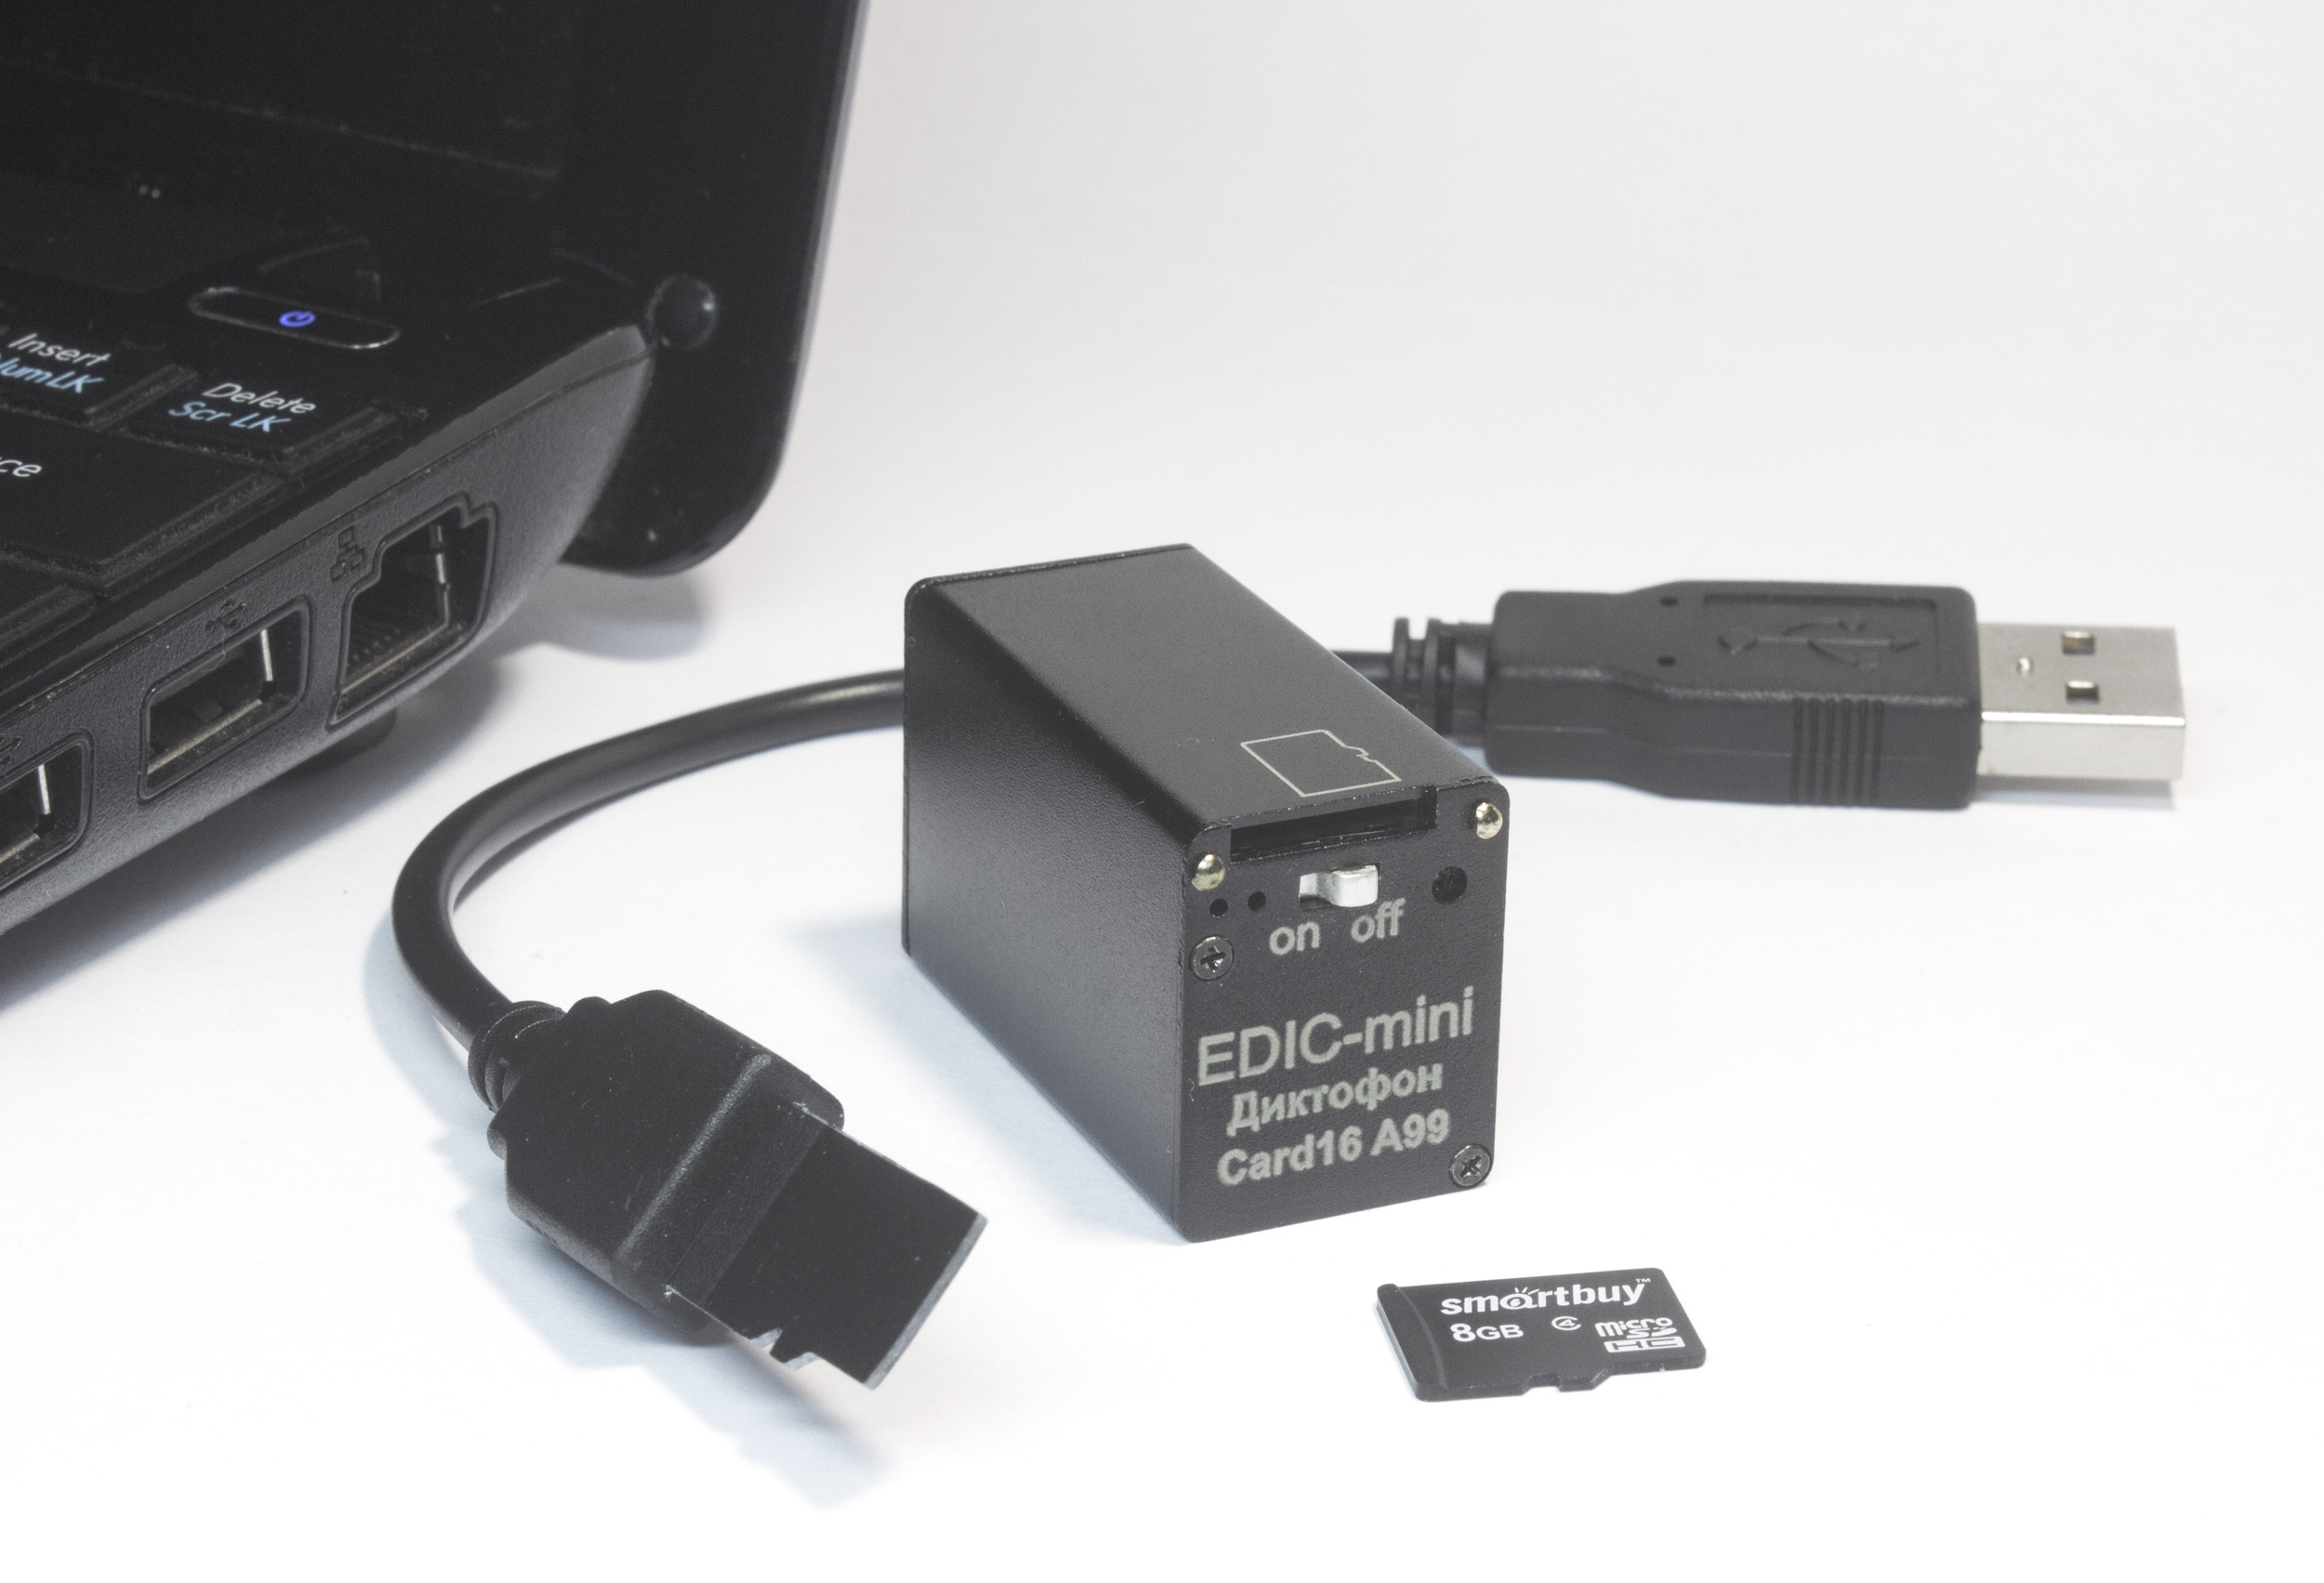 Все Телесистемы ЕМ Card16 А99 (металл, размер 18*23*37мм, вес 26г, автономность до 200ч, аккумулятор) видеонаблюдения в магазине Vidos Group